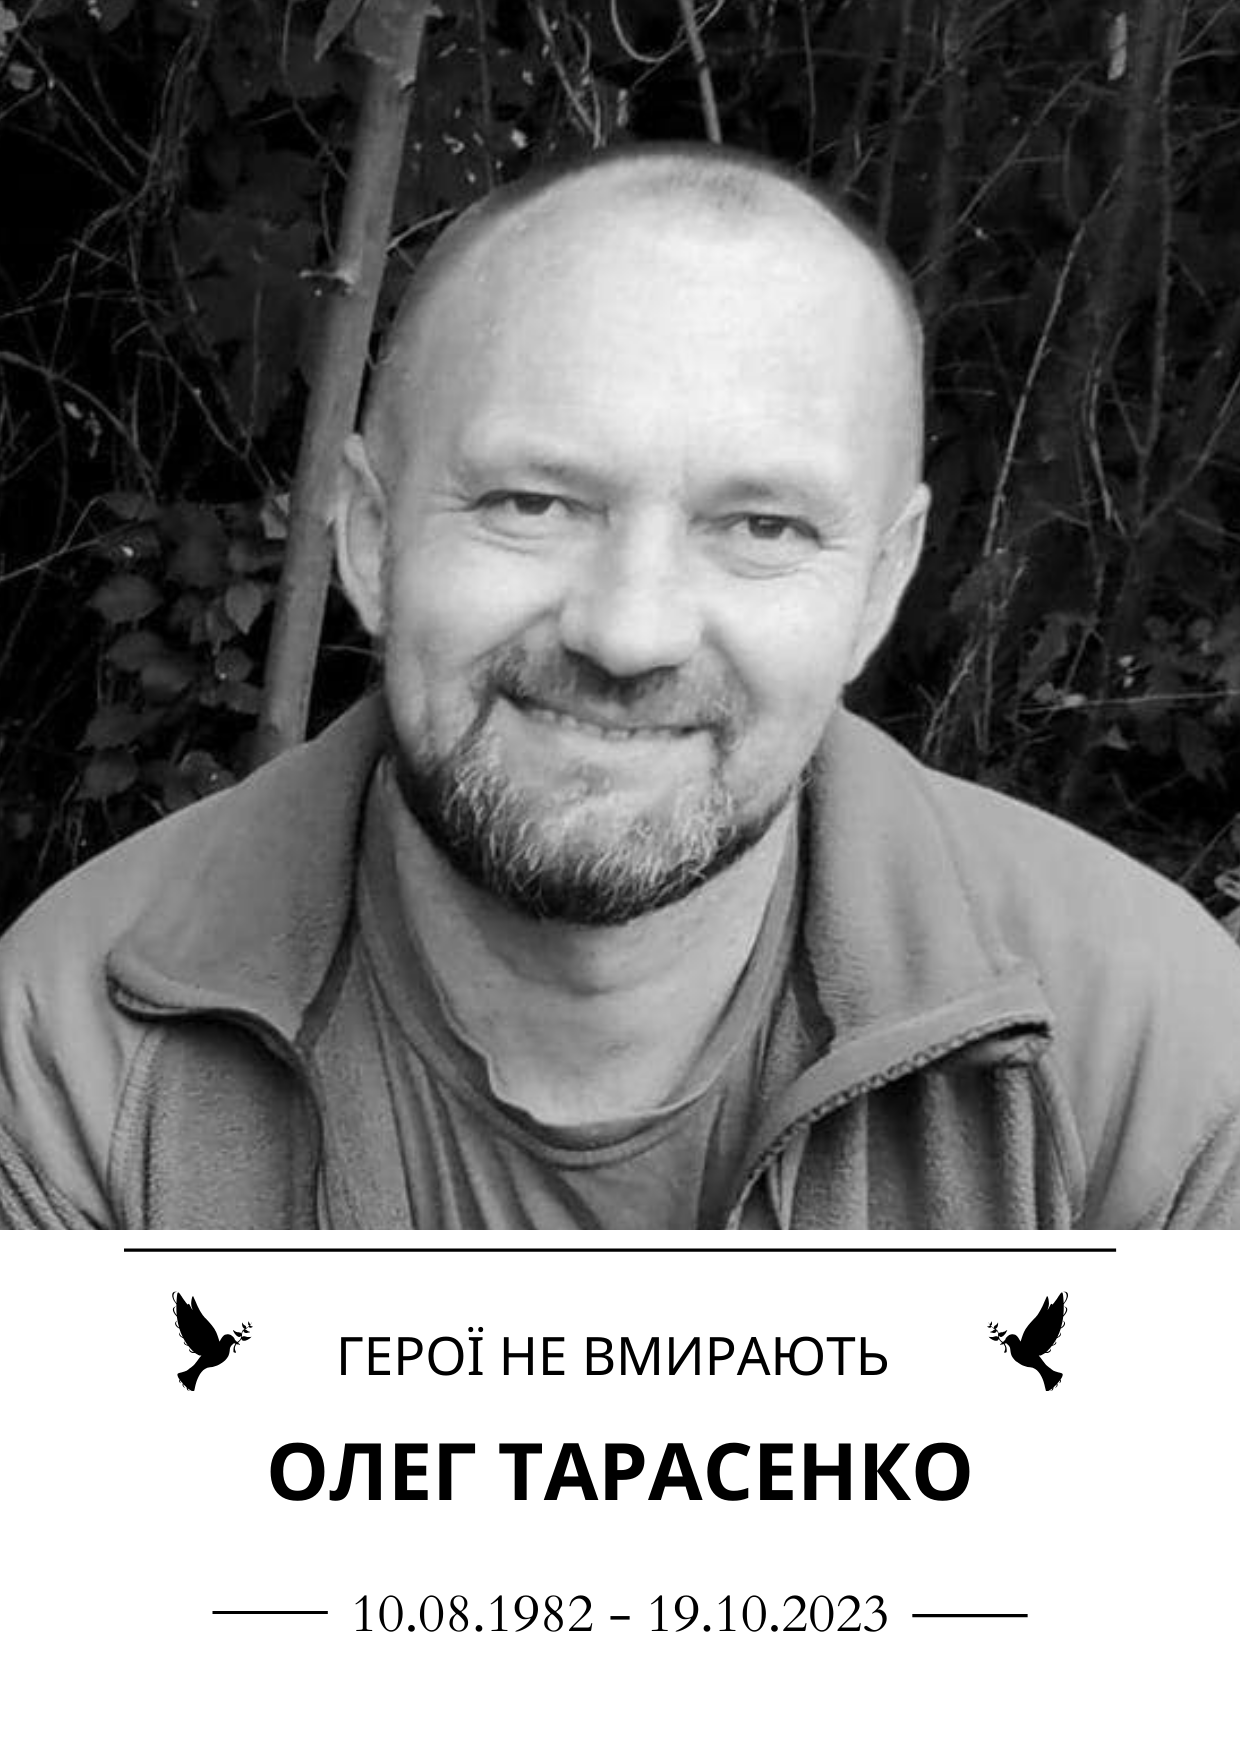 Тарасенко Олег